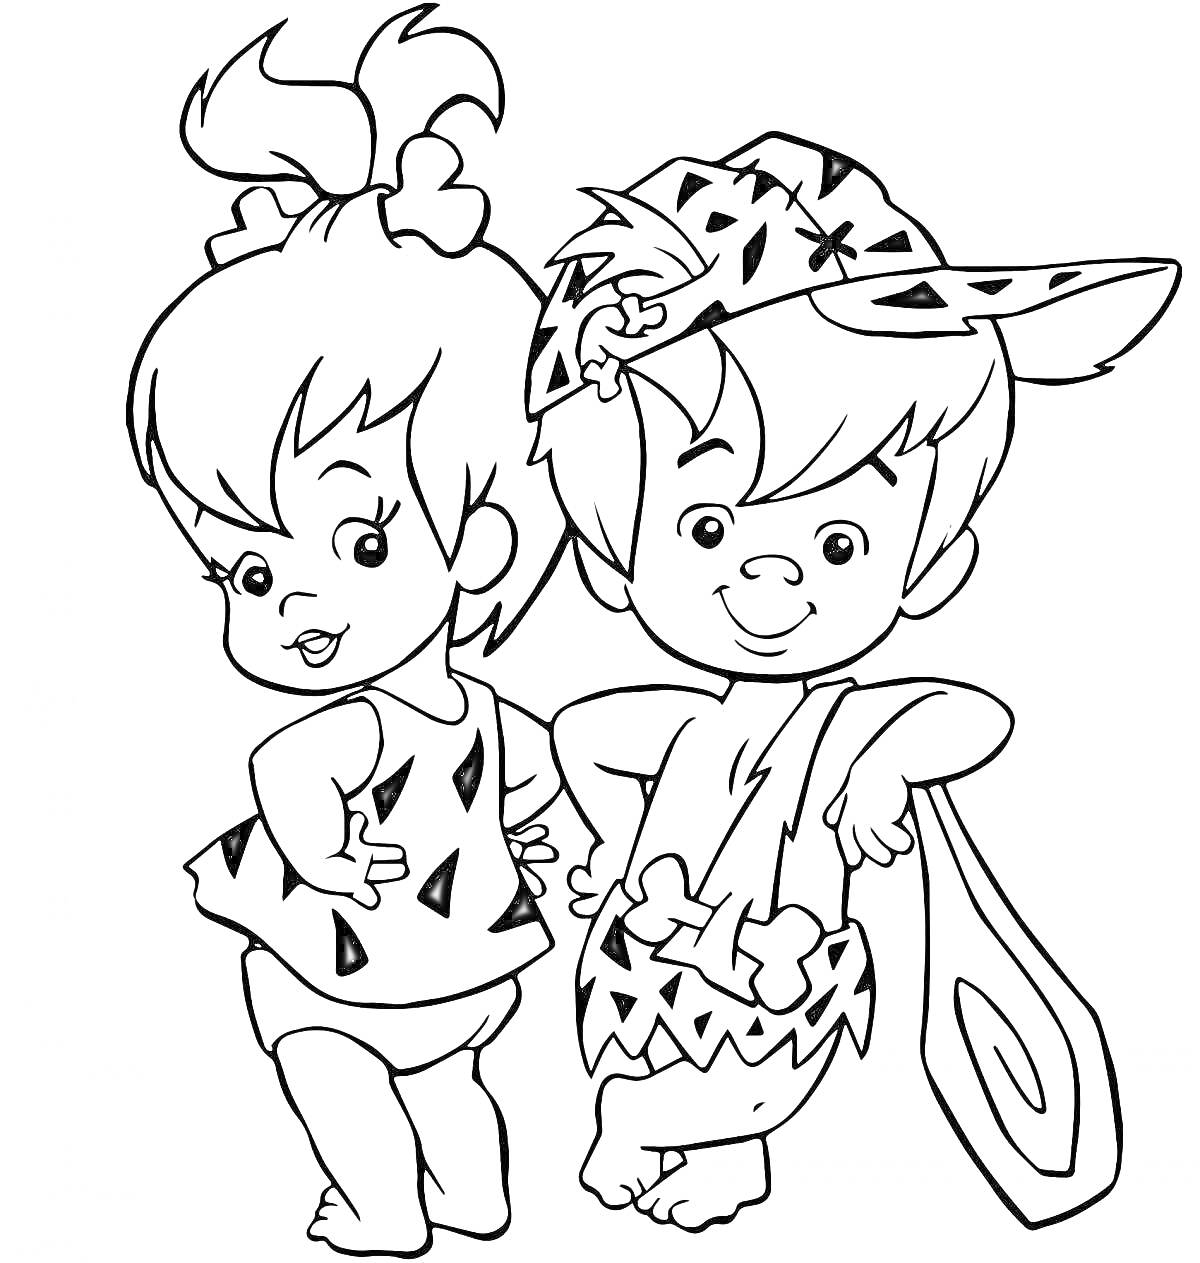 Раскраска Два ребенка в костюмах первобытных людей, девочка с бантиком и мальчик с шапкой с ушами